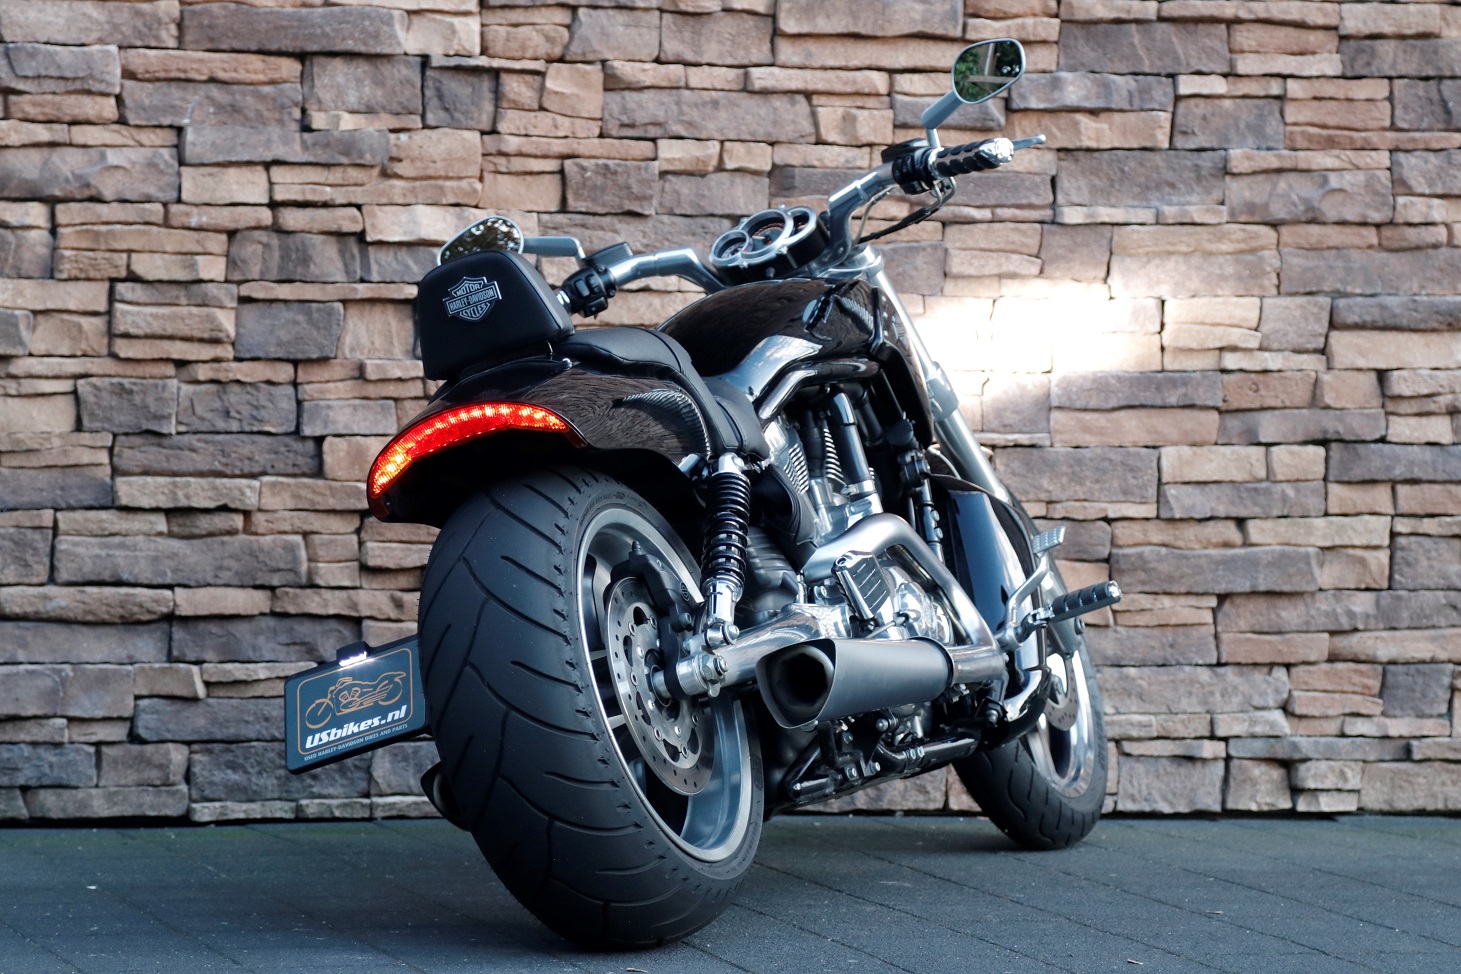 2009 Harley-Davidson VRSCF V-rod Muscle